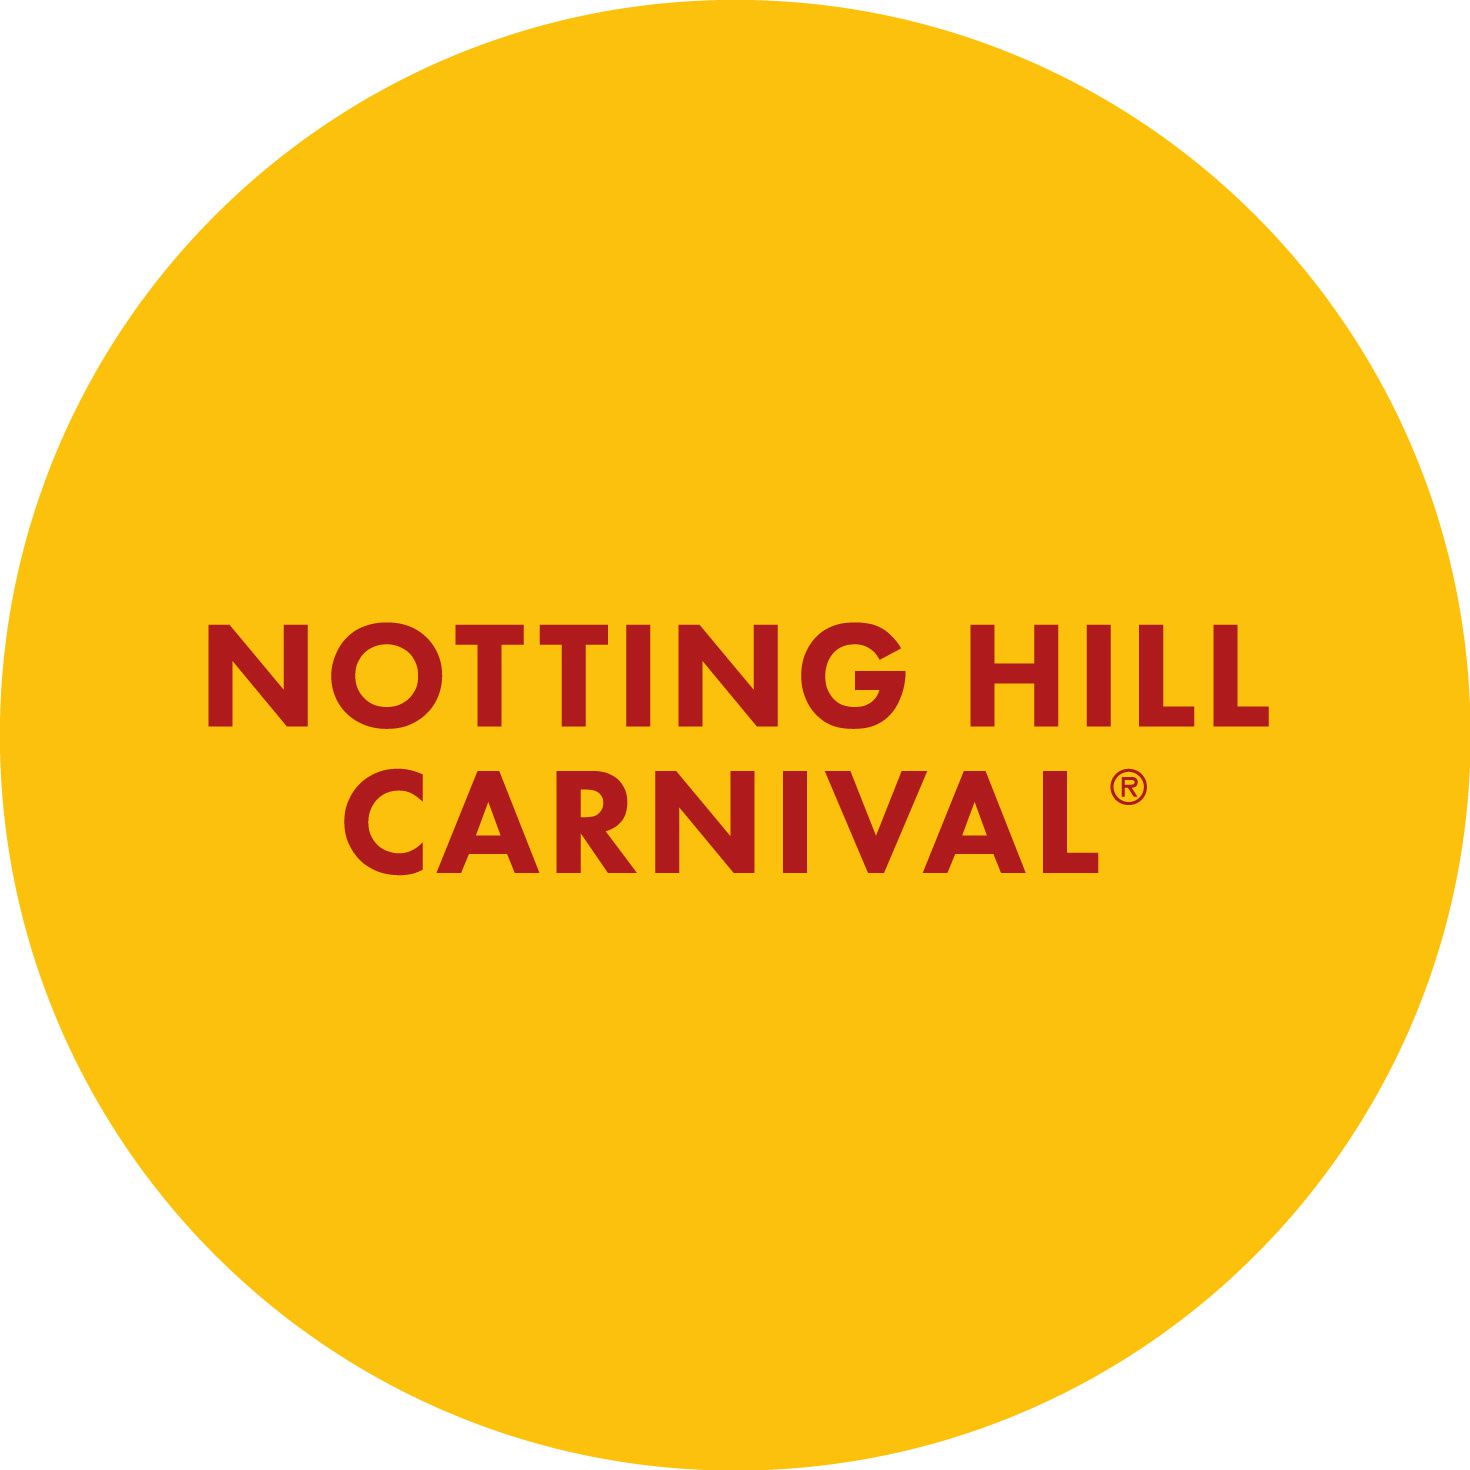 Toutes les informations officiel du carnaval de Londres